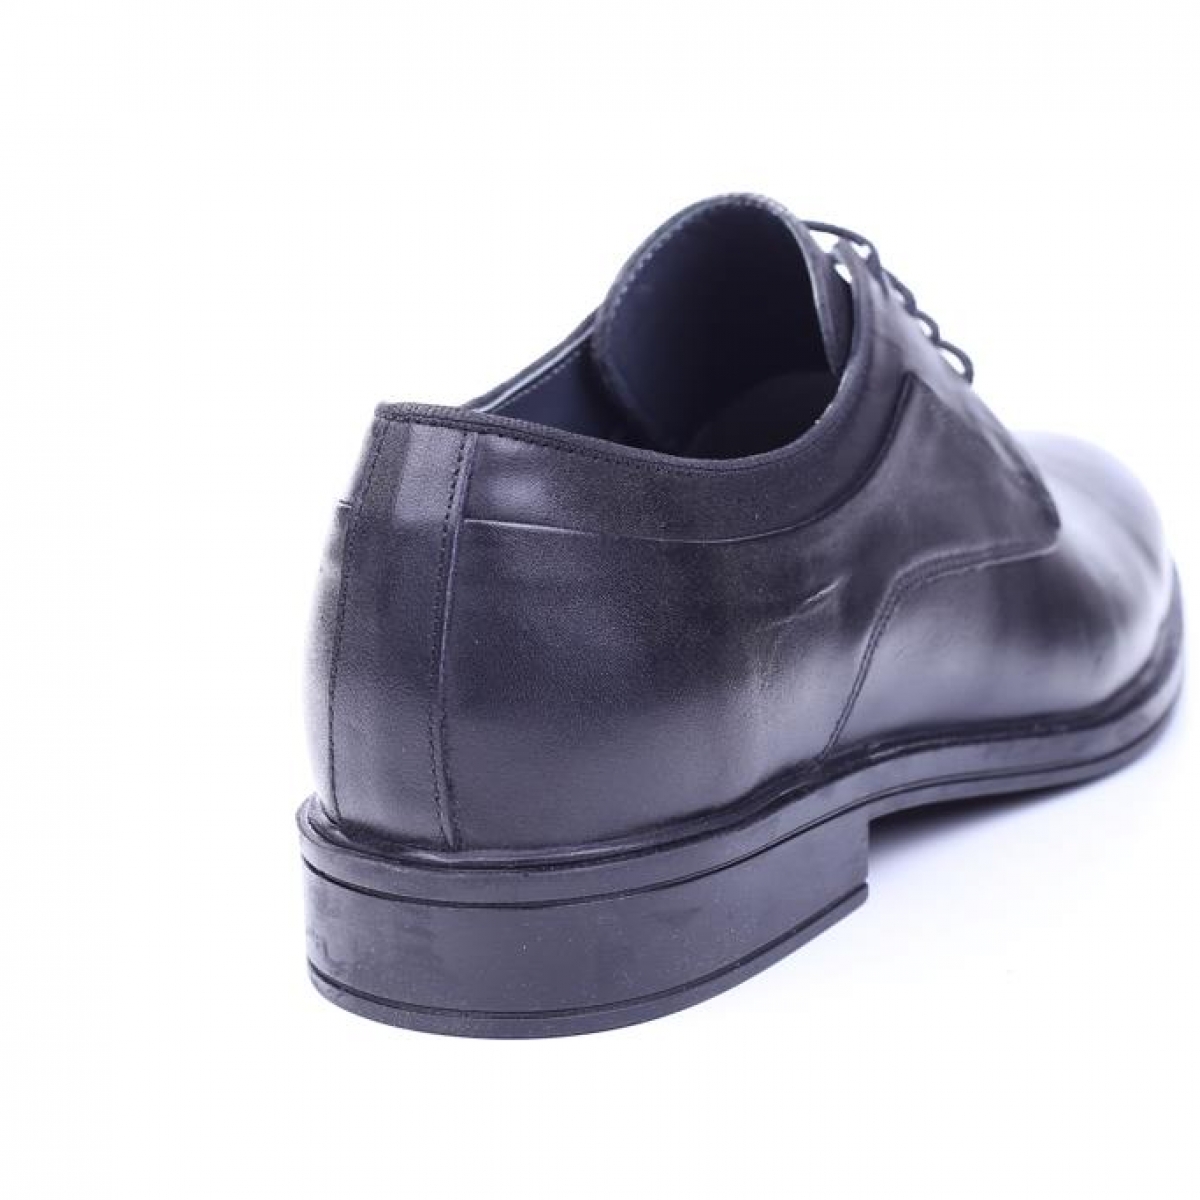 Flo Tardelli 4345 Siyah Büyük Numara Termo Taban Bağcıklı Hakiki Deri Erkek Ayakkabı. 3